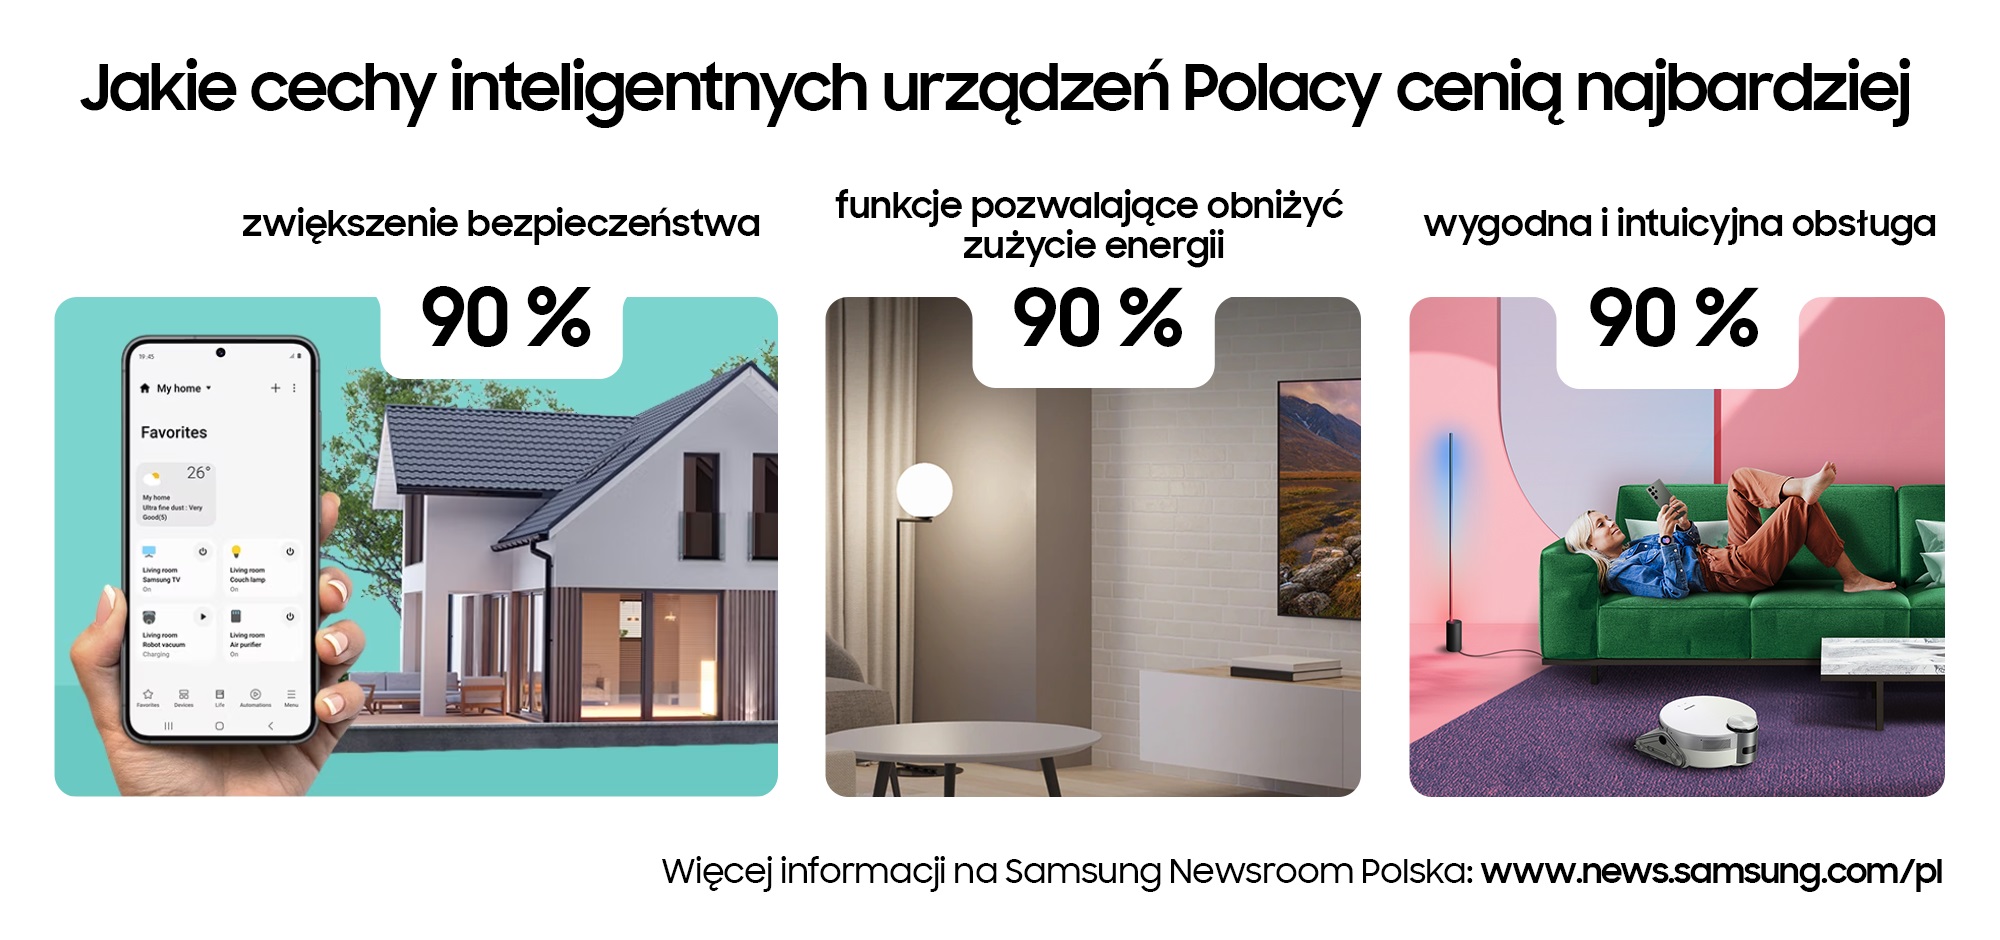 Cechy inteligentnych rozwiązań domowych cenione przez Polaków (źródło: Samsung)